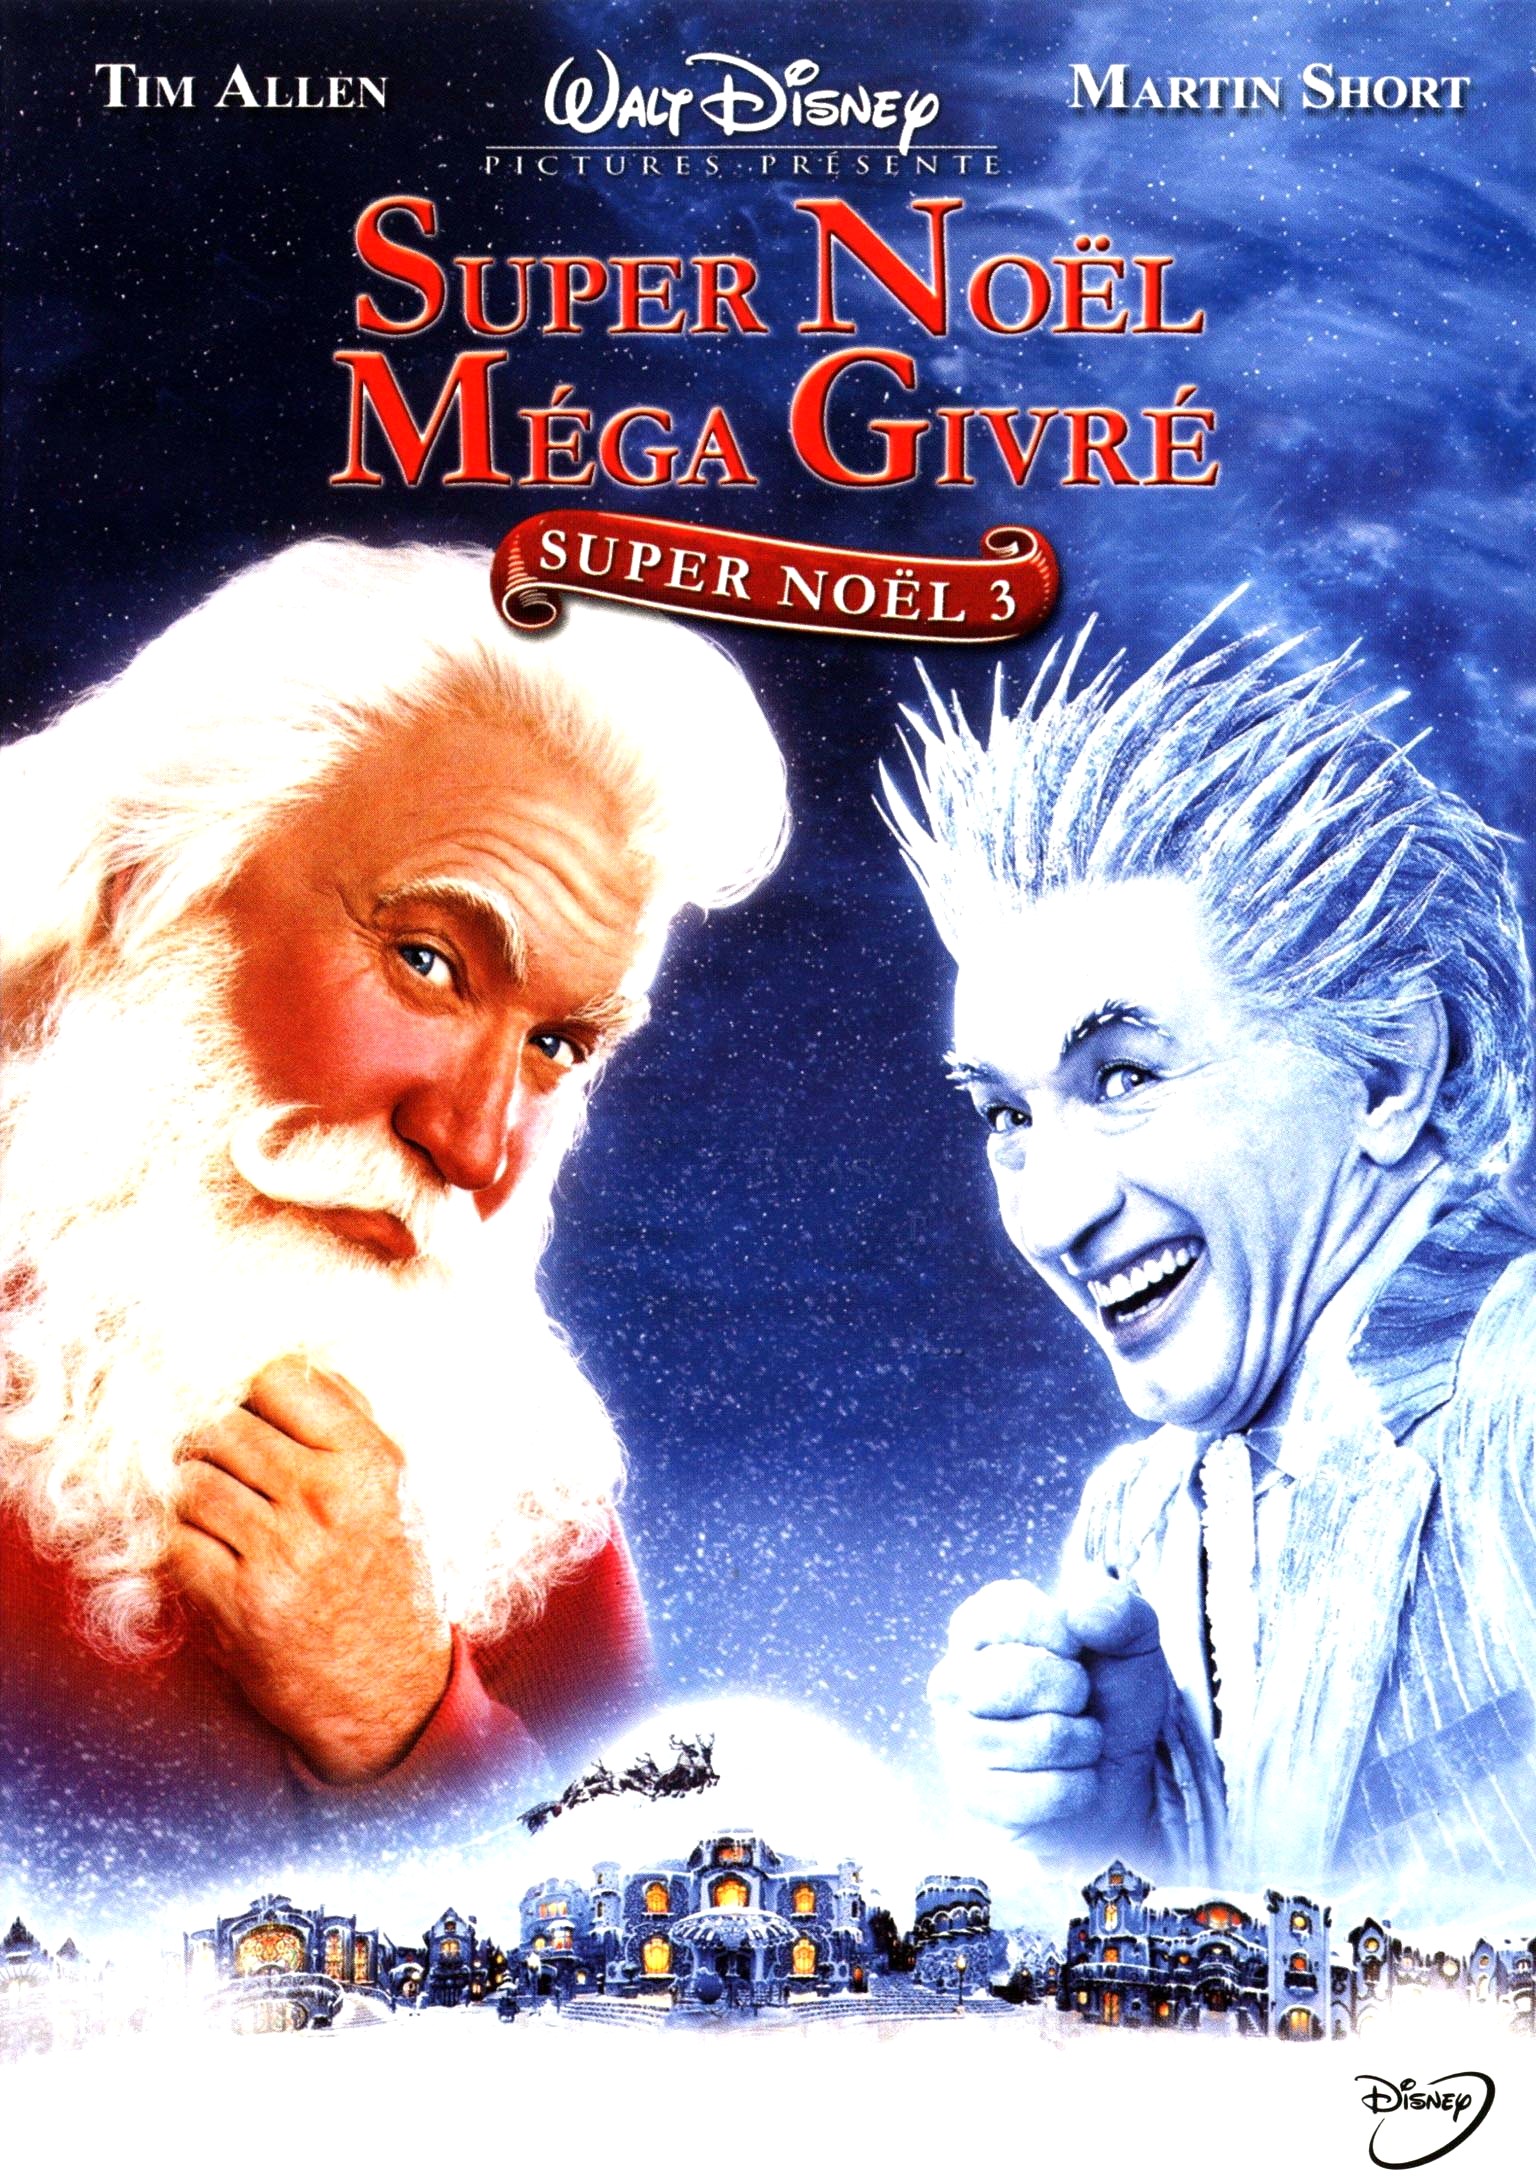 The Santa Clause 3 - Super Noël méga givré 